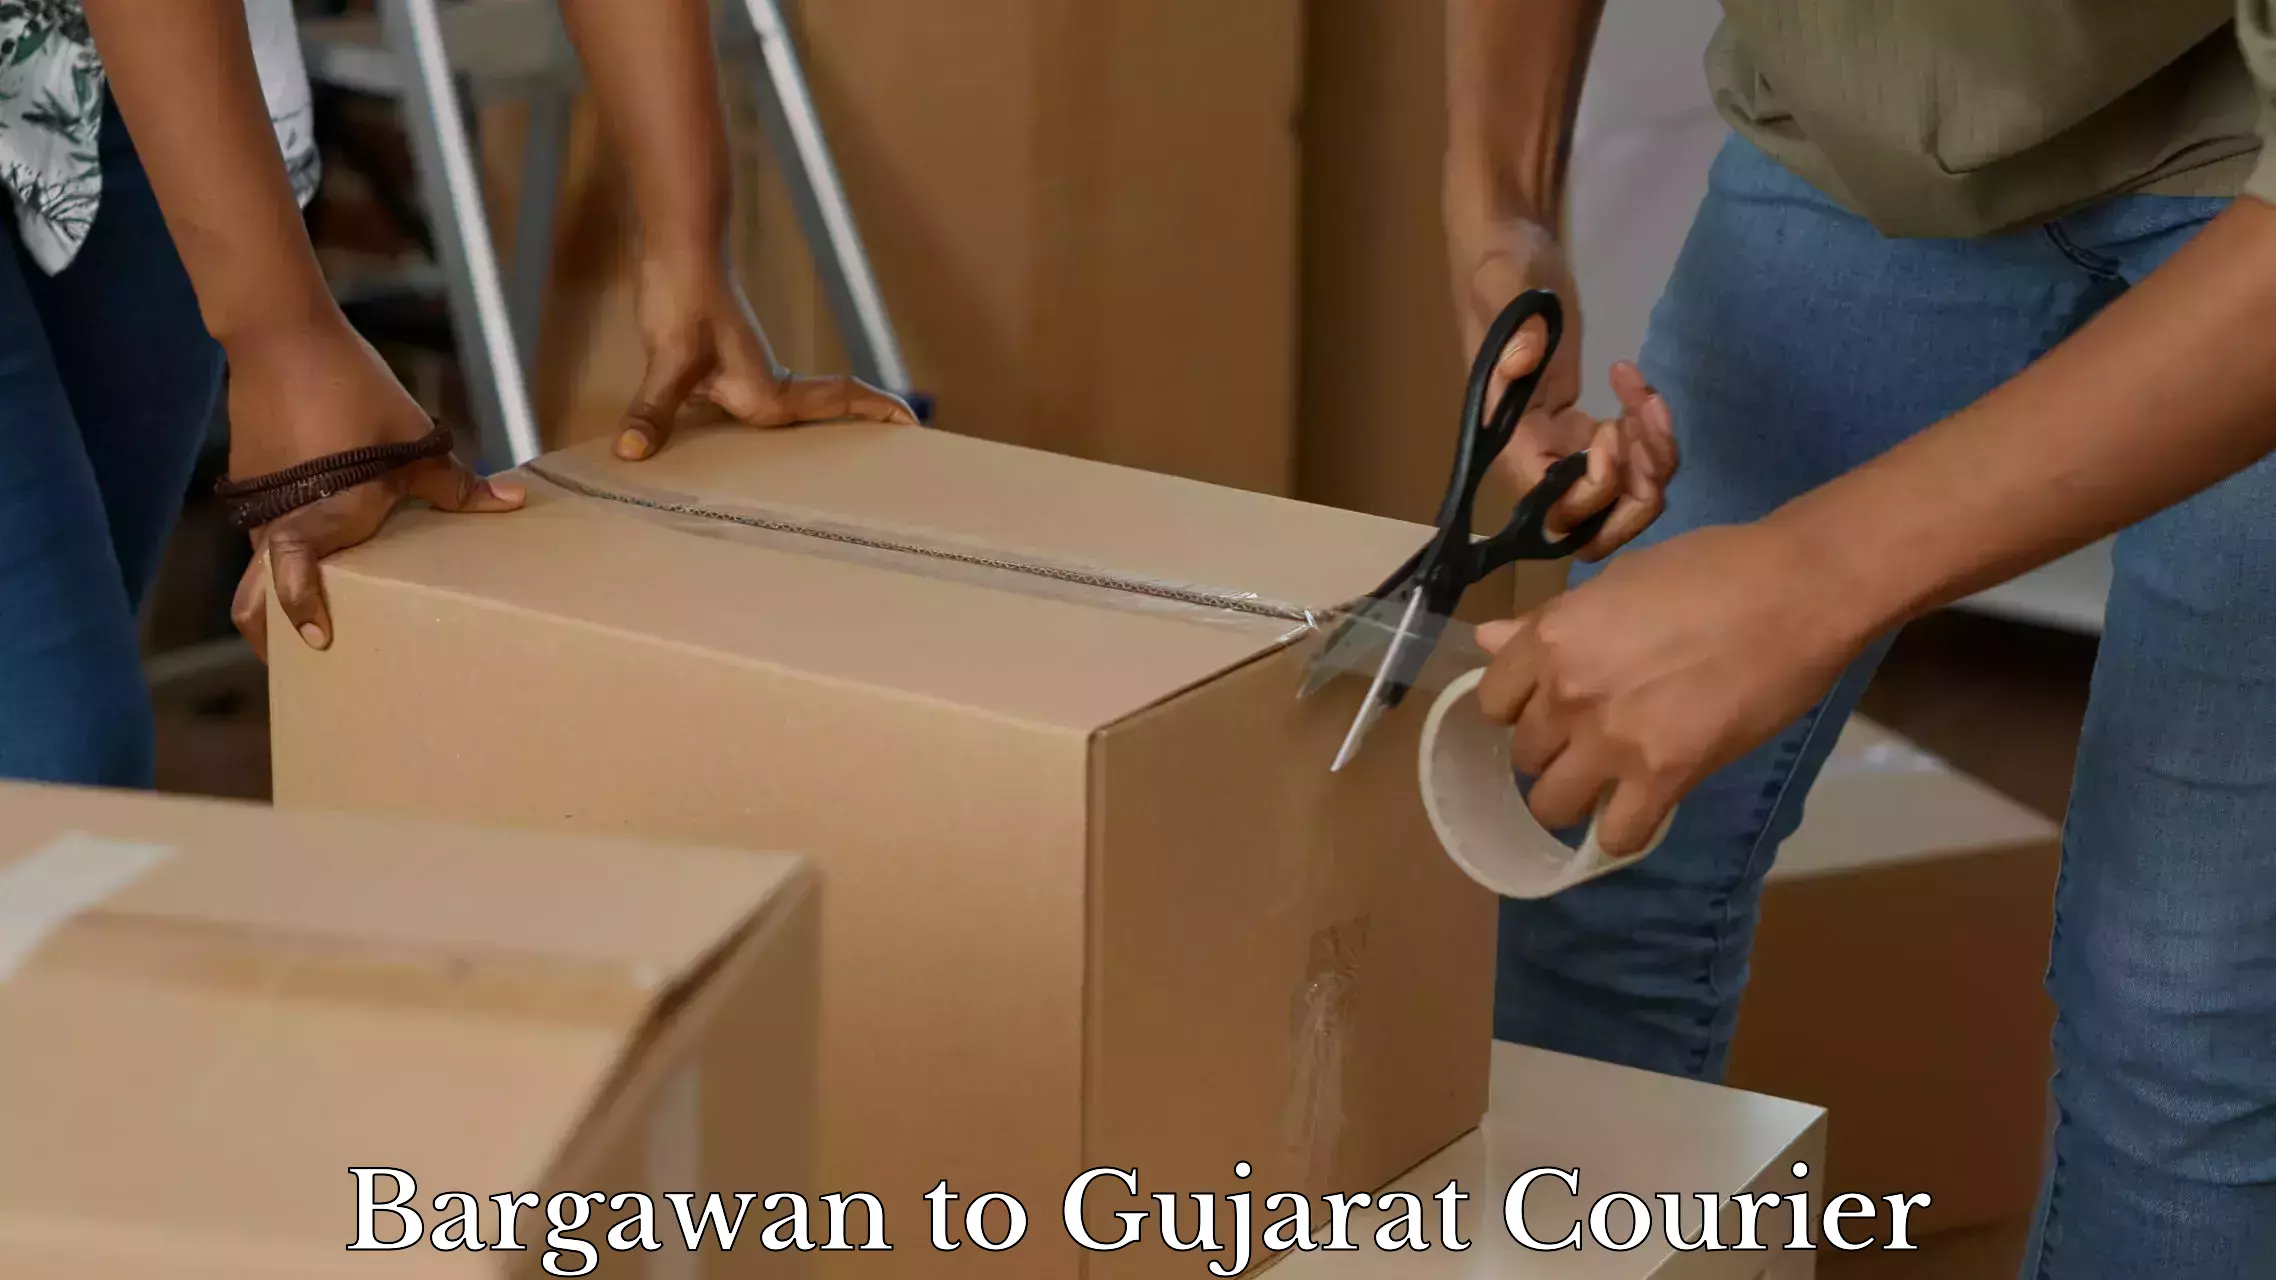 Baggage shipping experts Bargawan to Gujarat